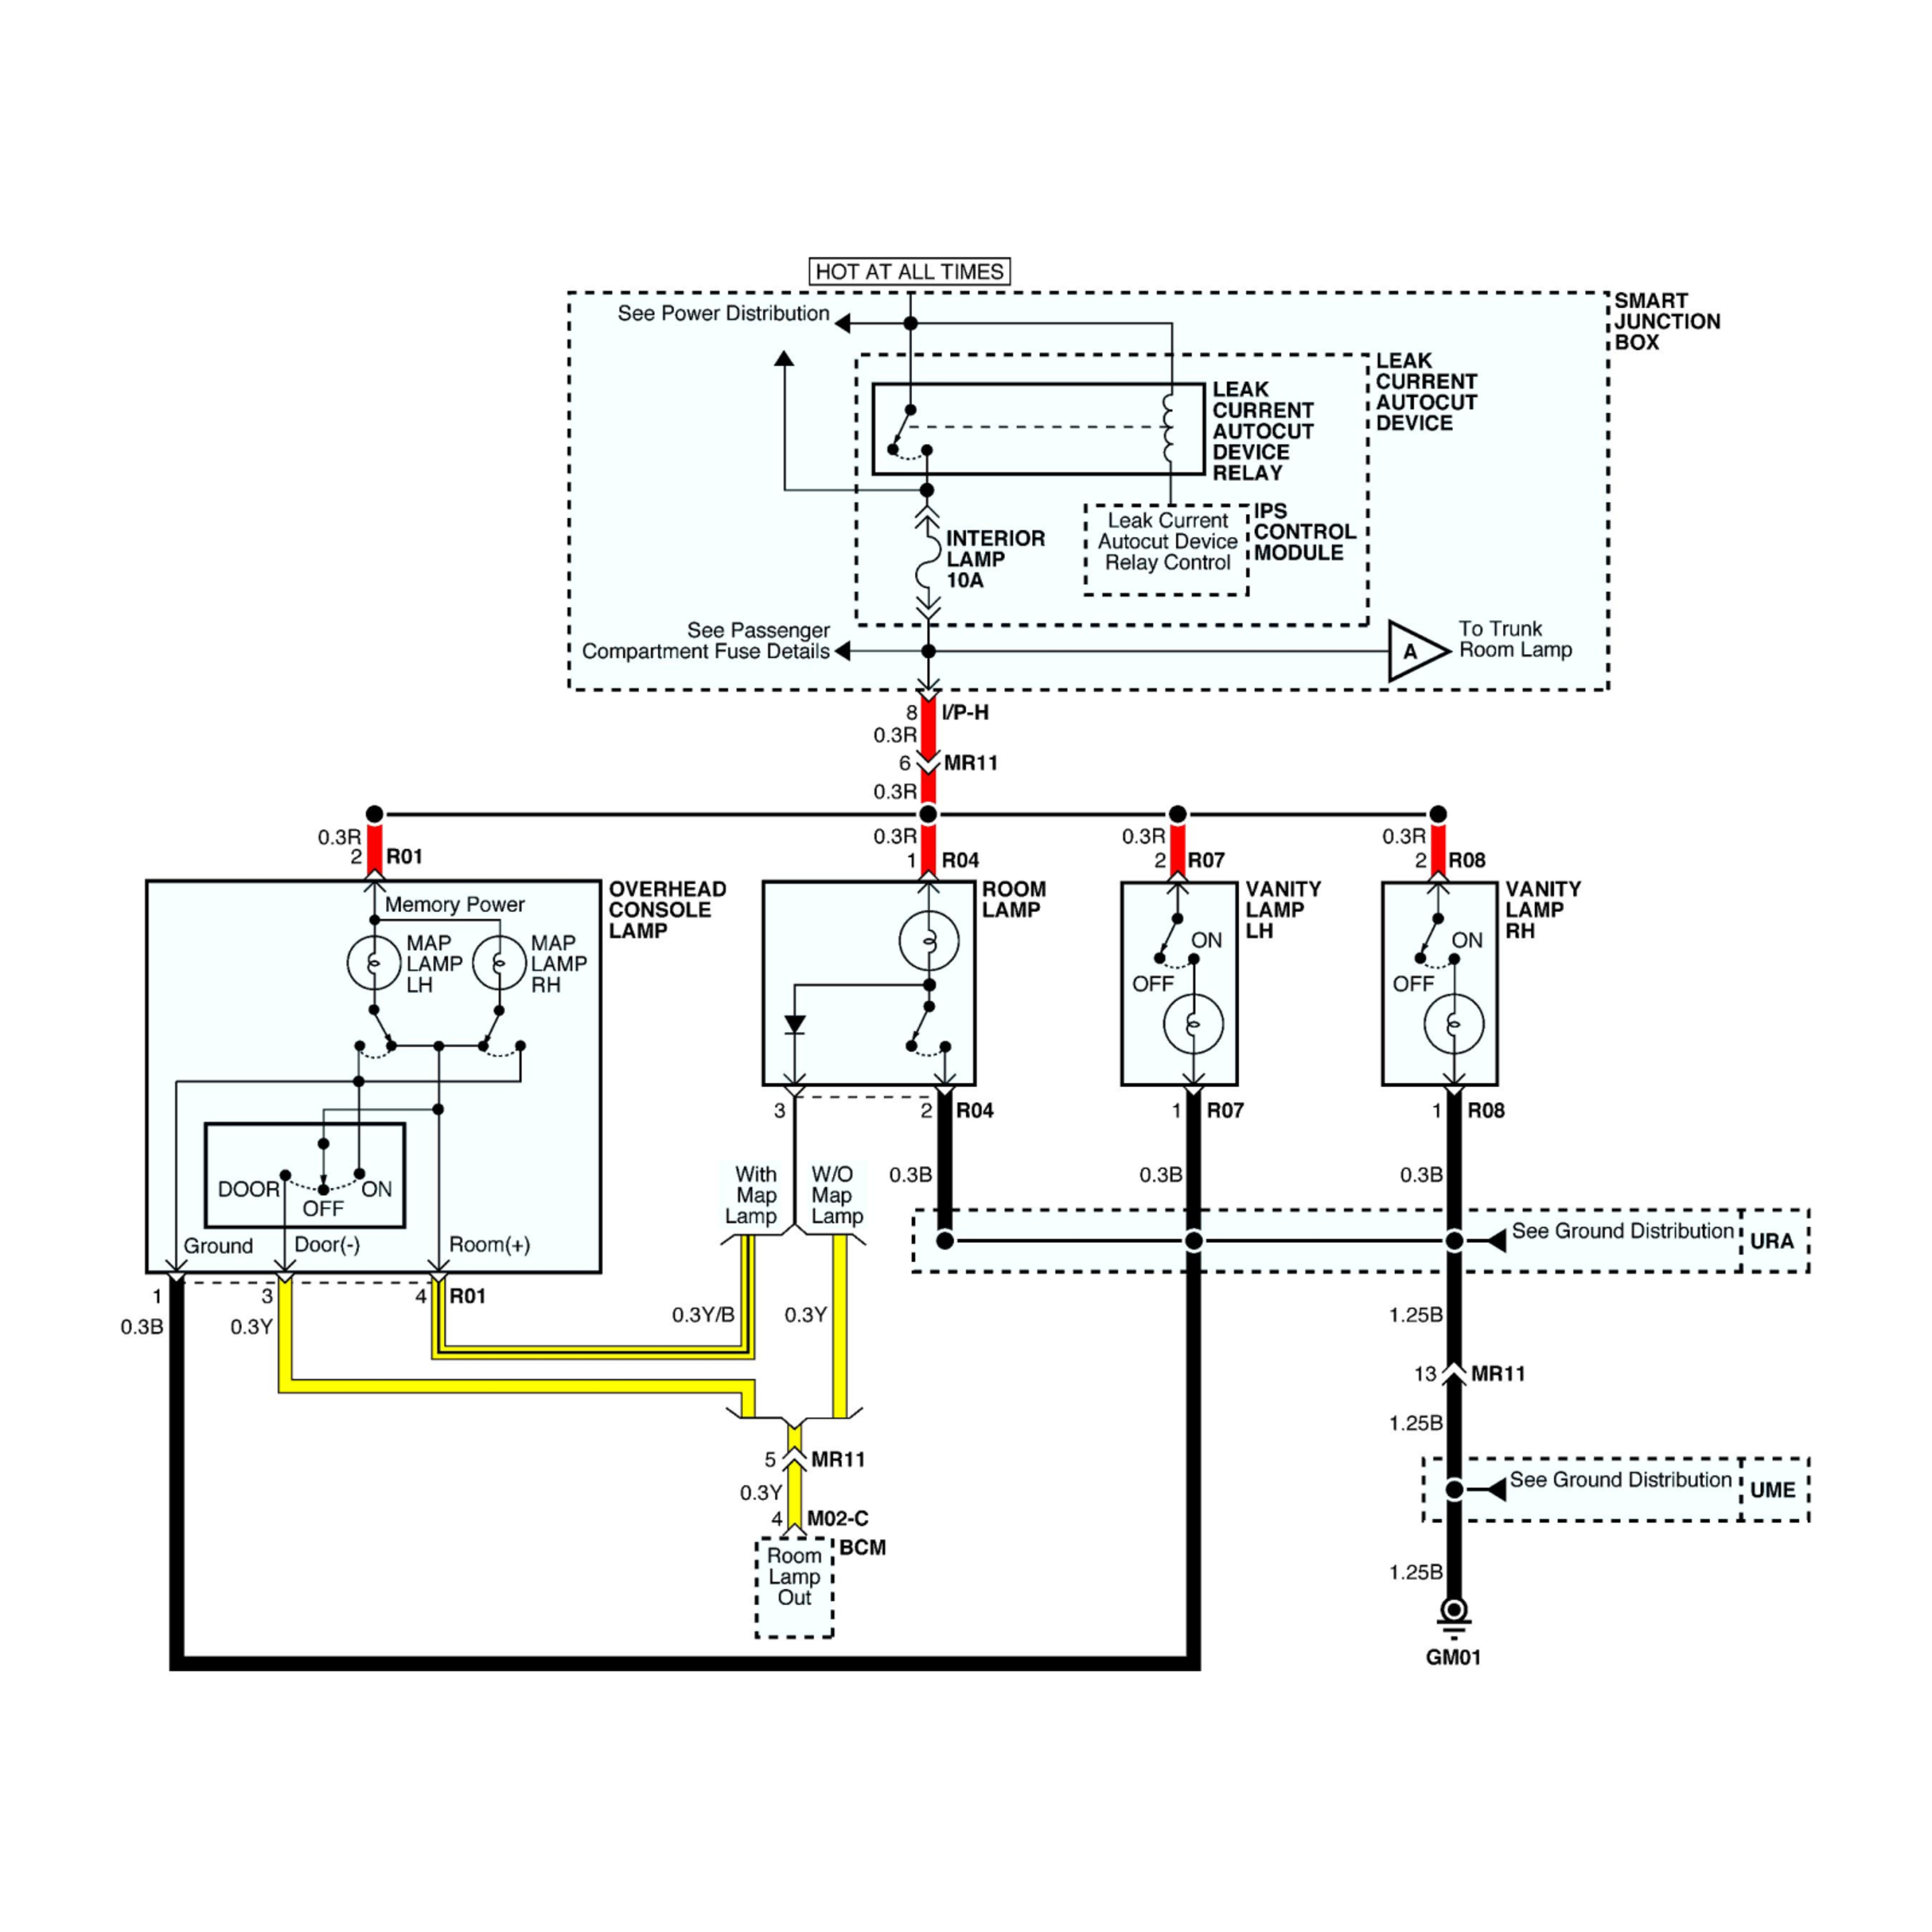 2019 Kia Cadenza wiring diagrams example